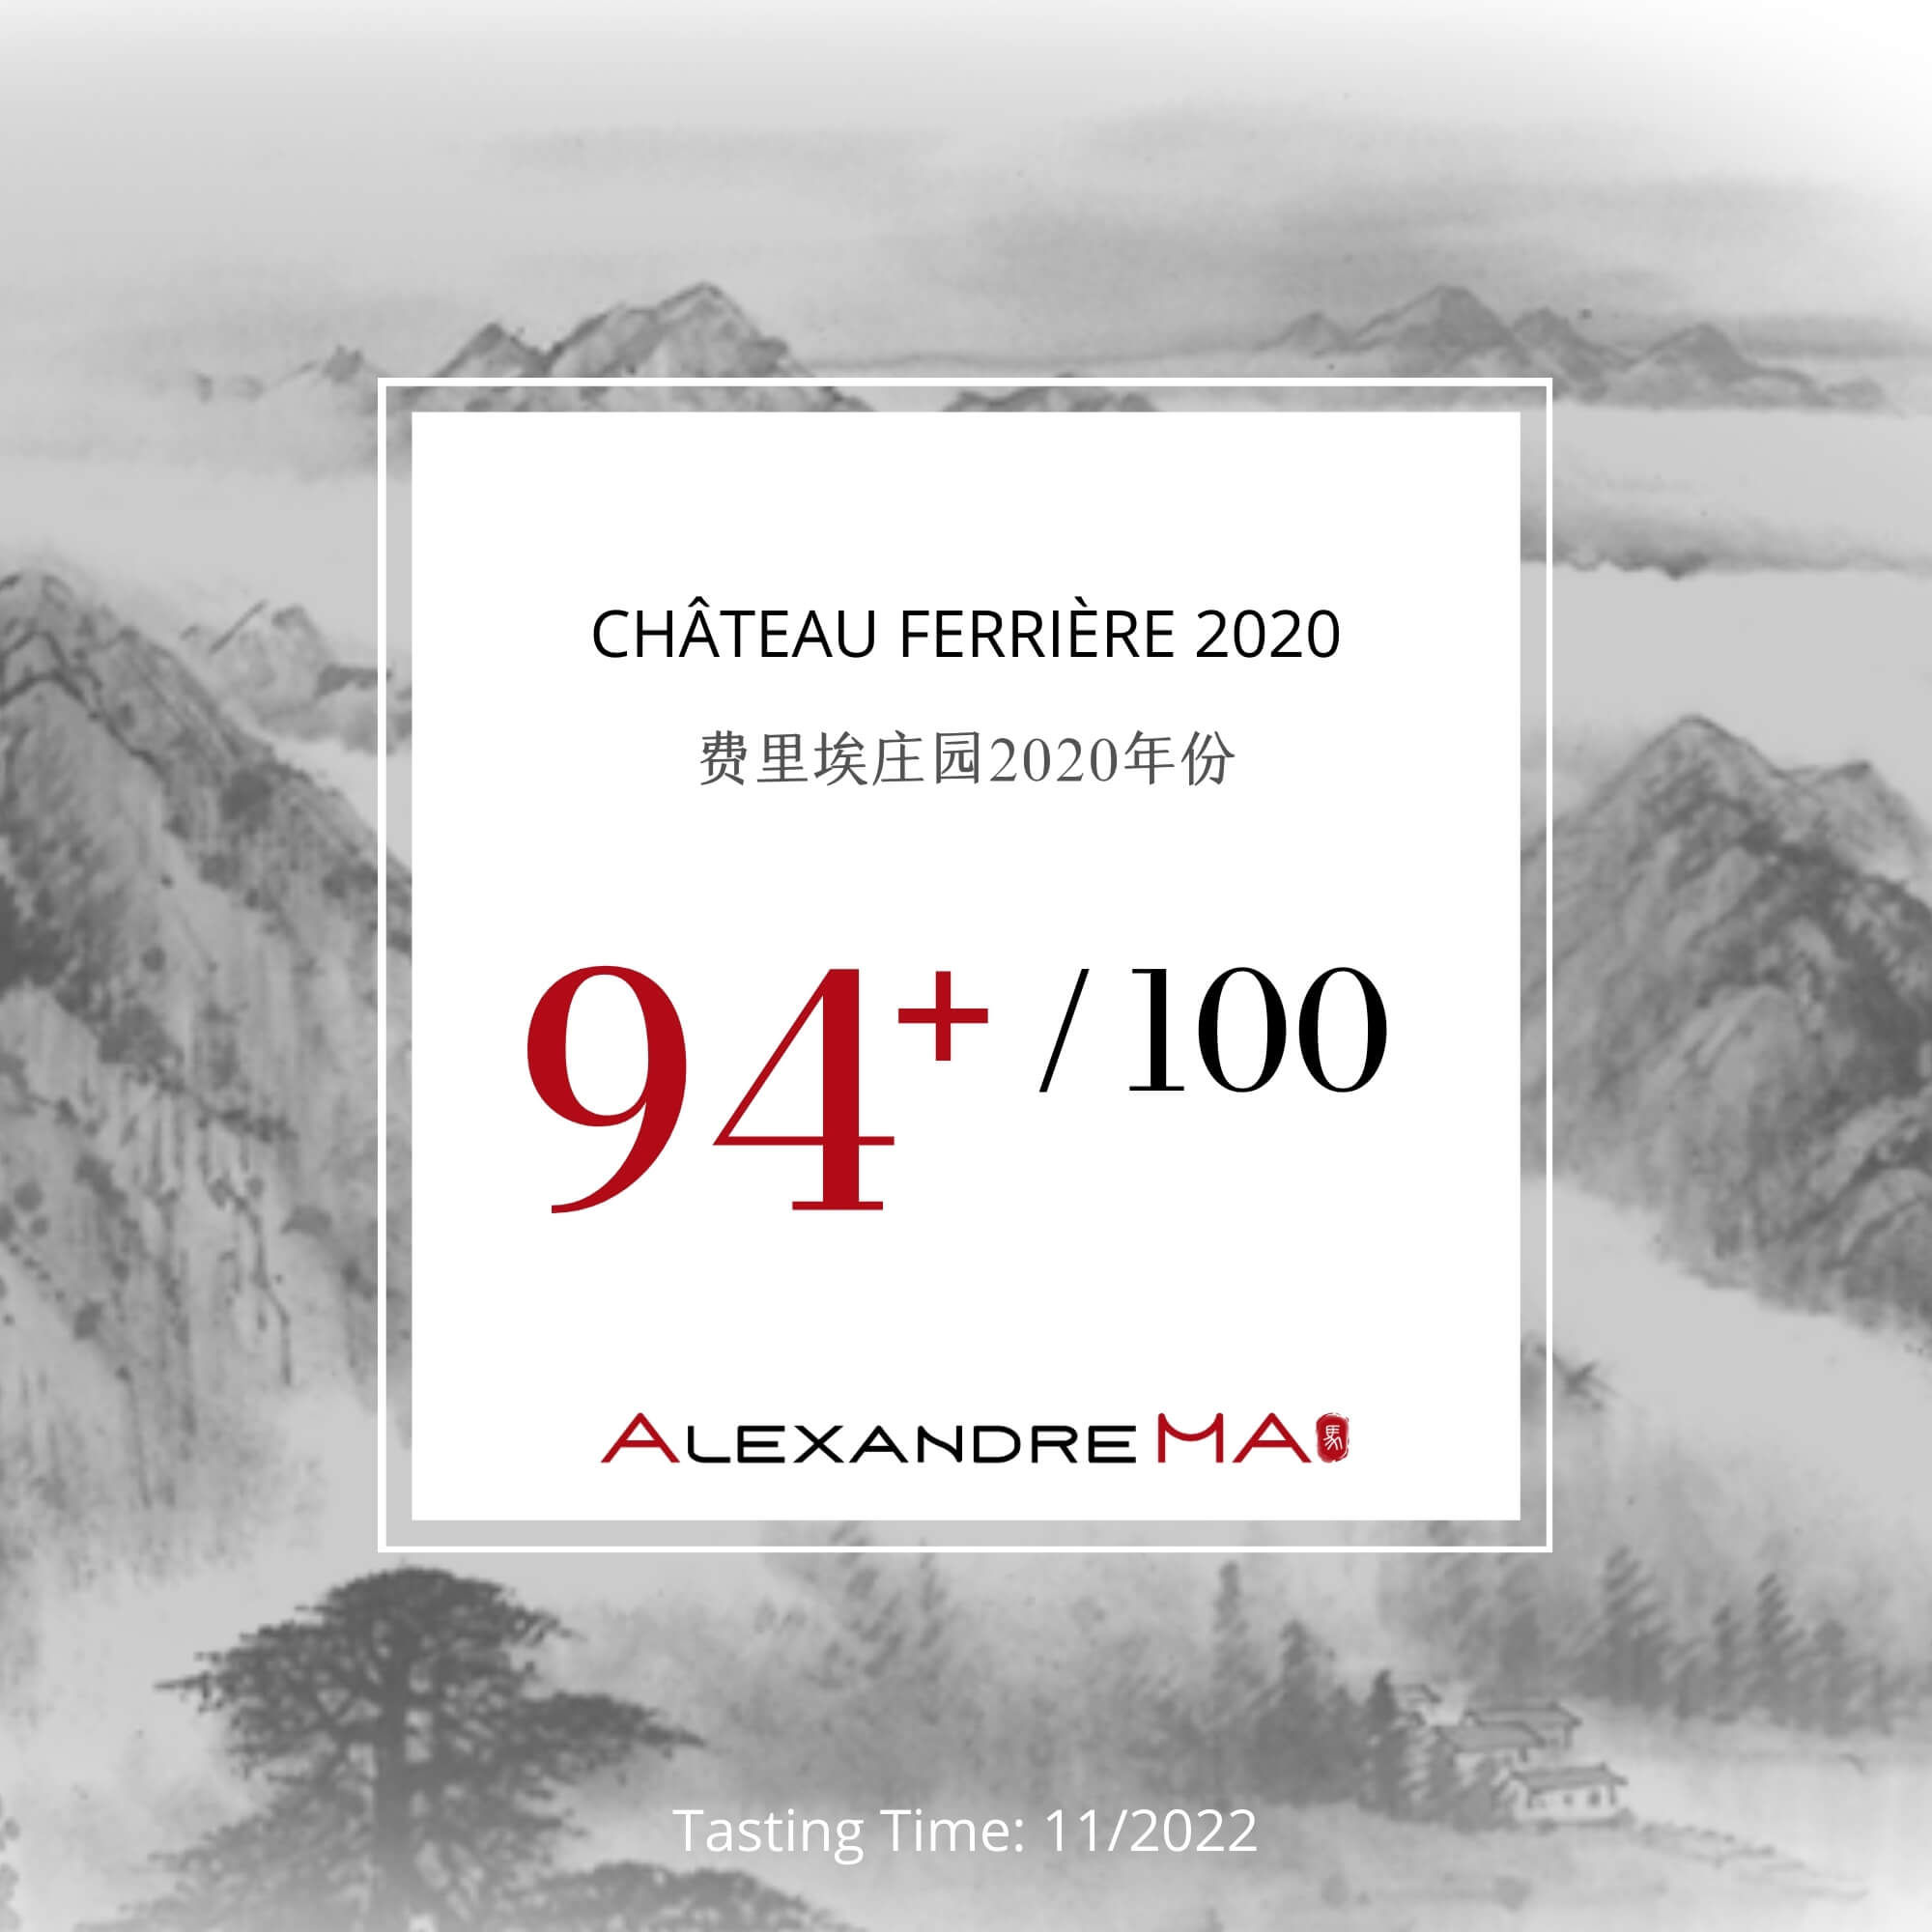 Château Ferrière 2020 费里埃庄园 - Alexandre Ma